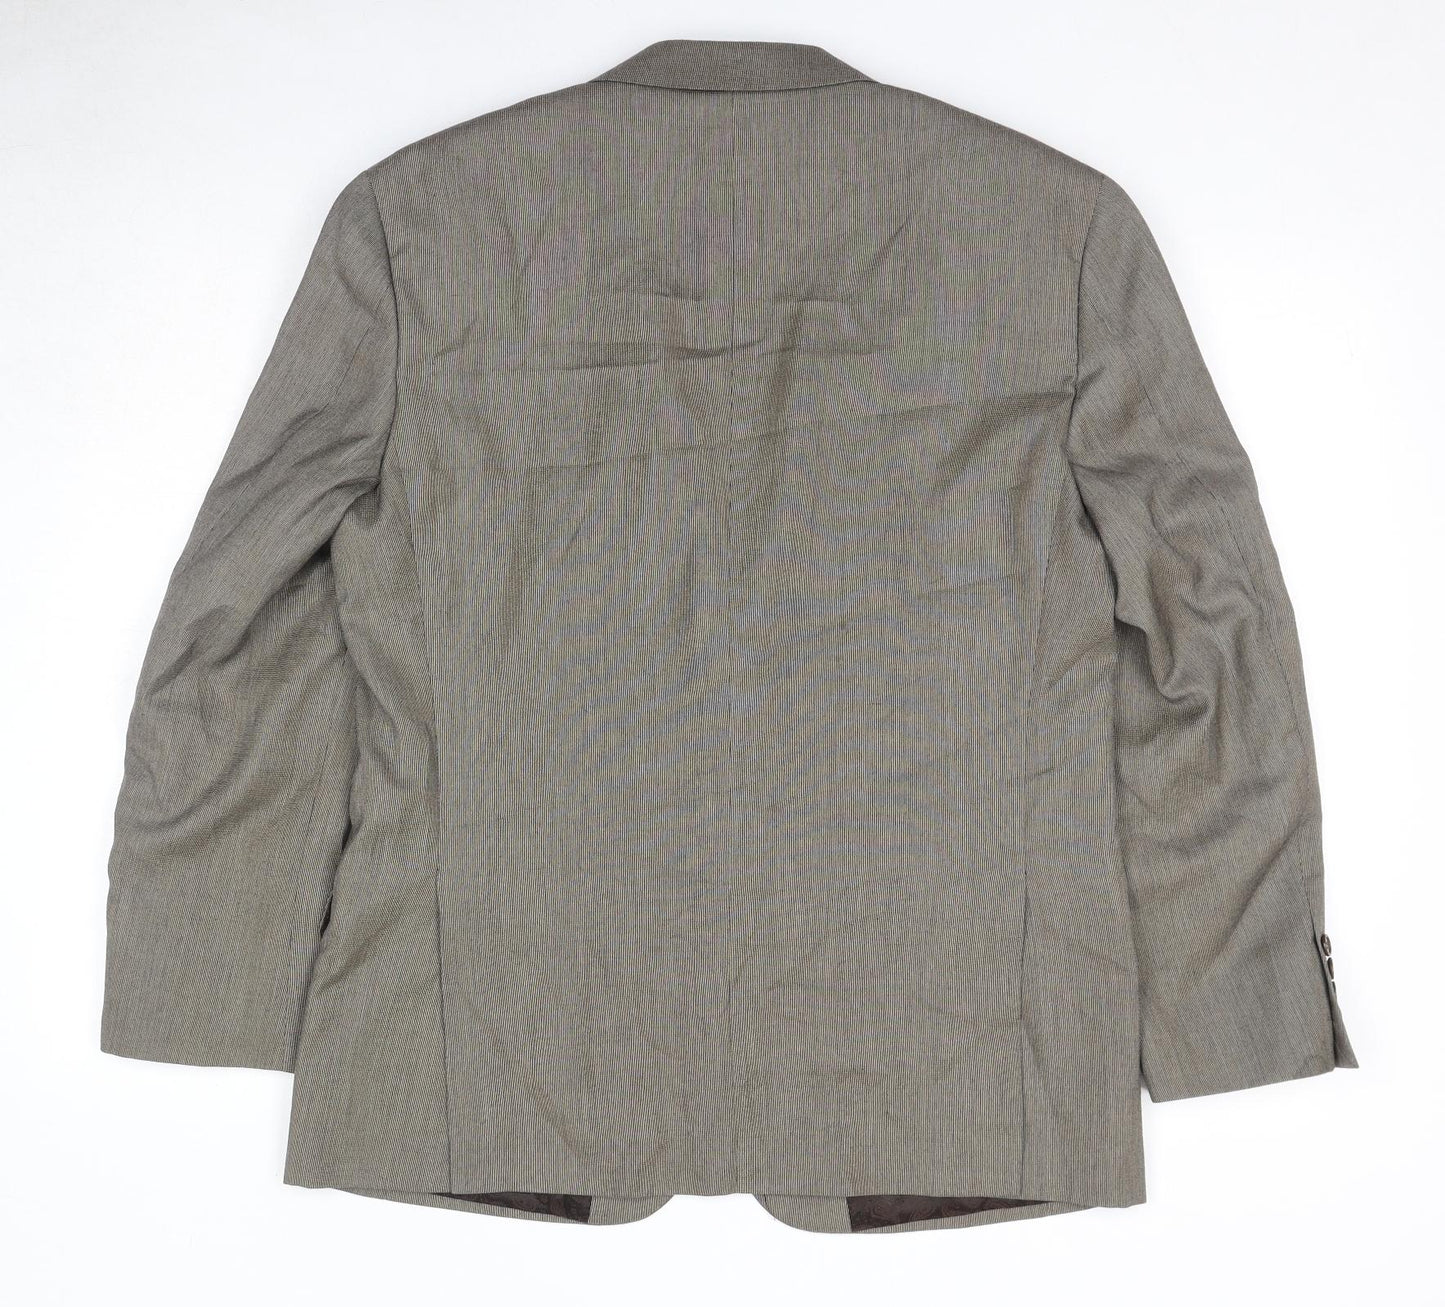 Skopes Mens Brown Polyester Jacket Suit Jacket Size 40 Regular